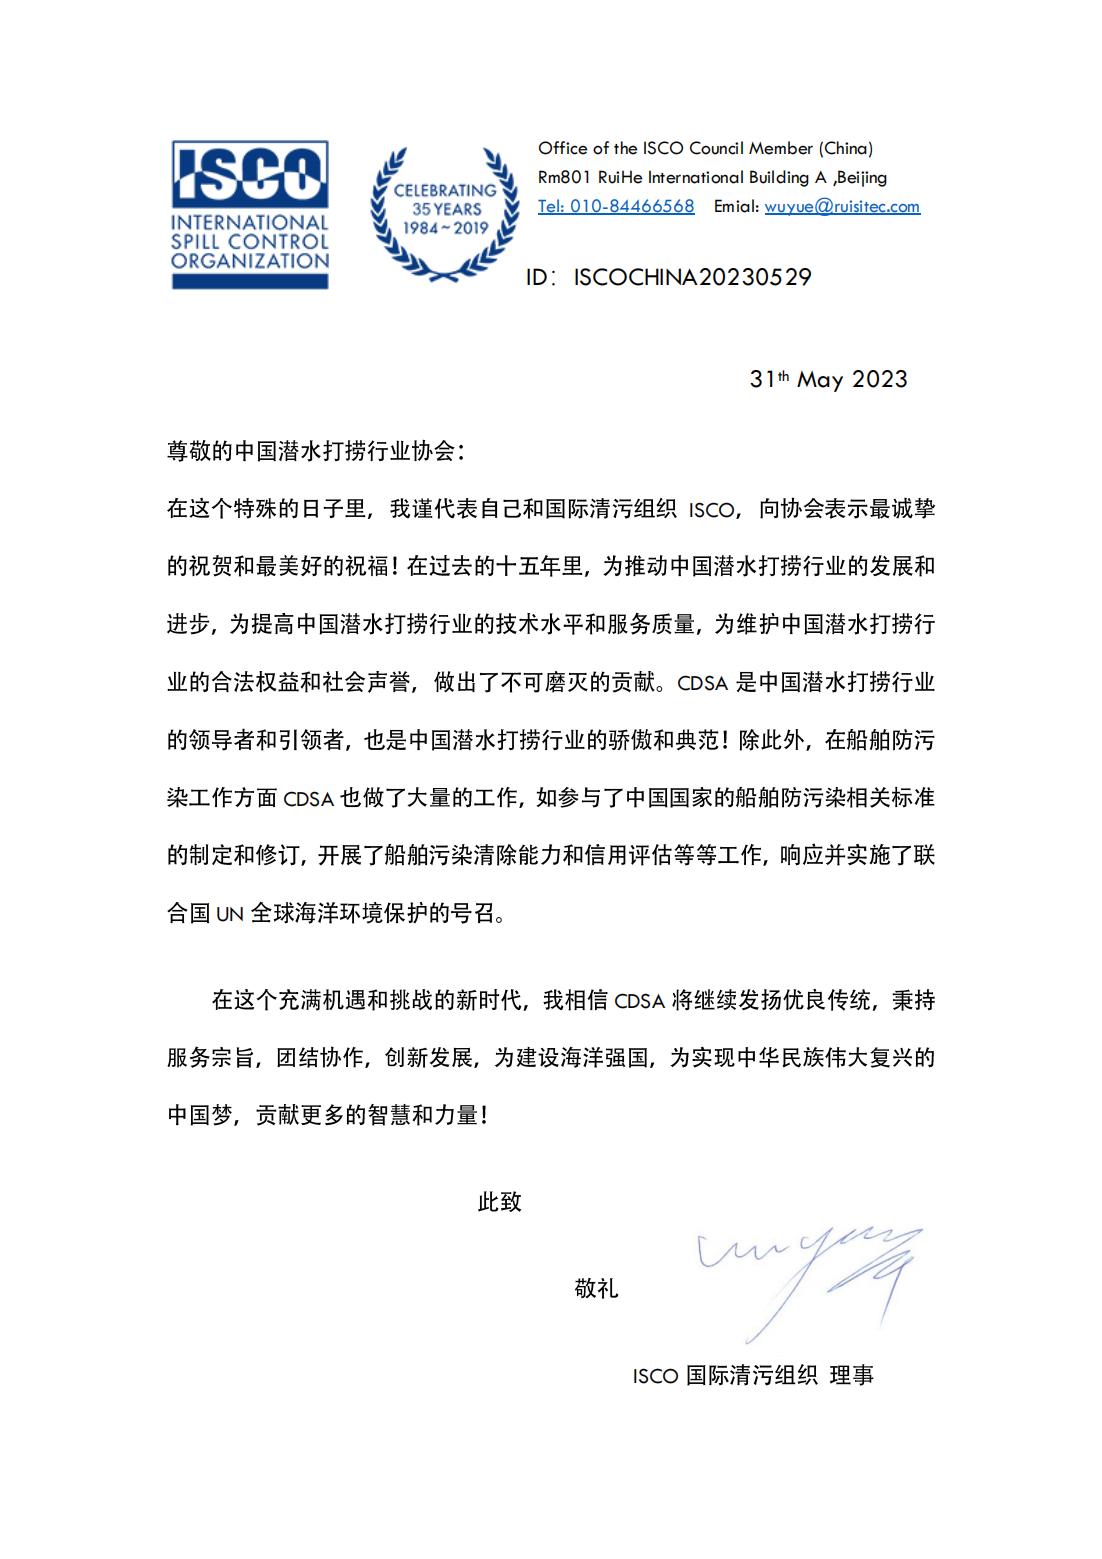 20230531 （中文）国际清污组织ISCO来信祝贺协会成立十五周年 Congrats Letter for CDSA 2023_00.jpg